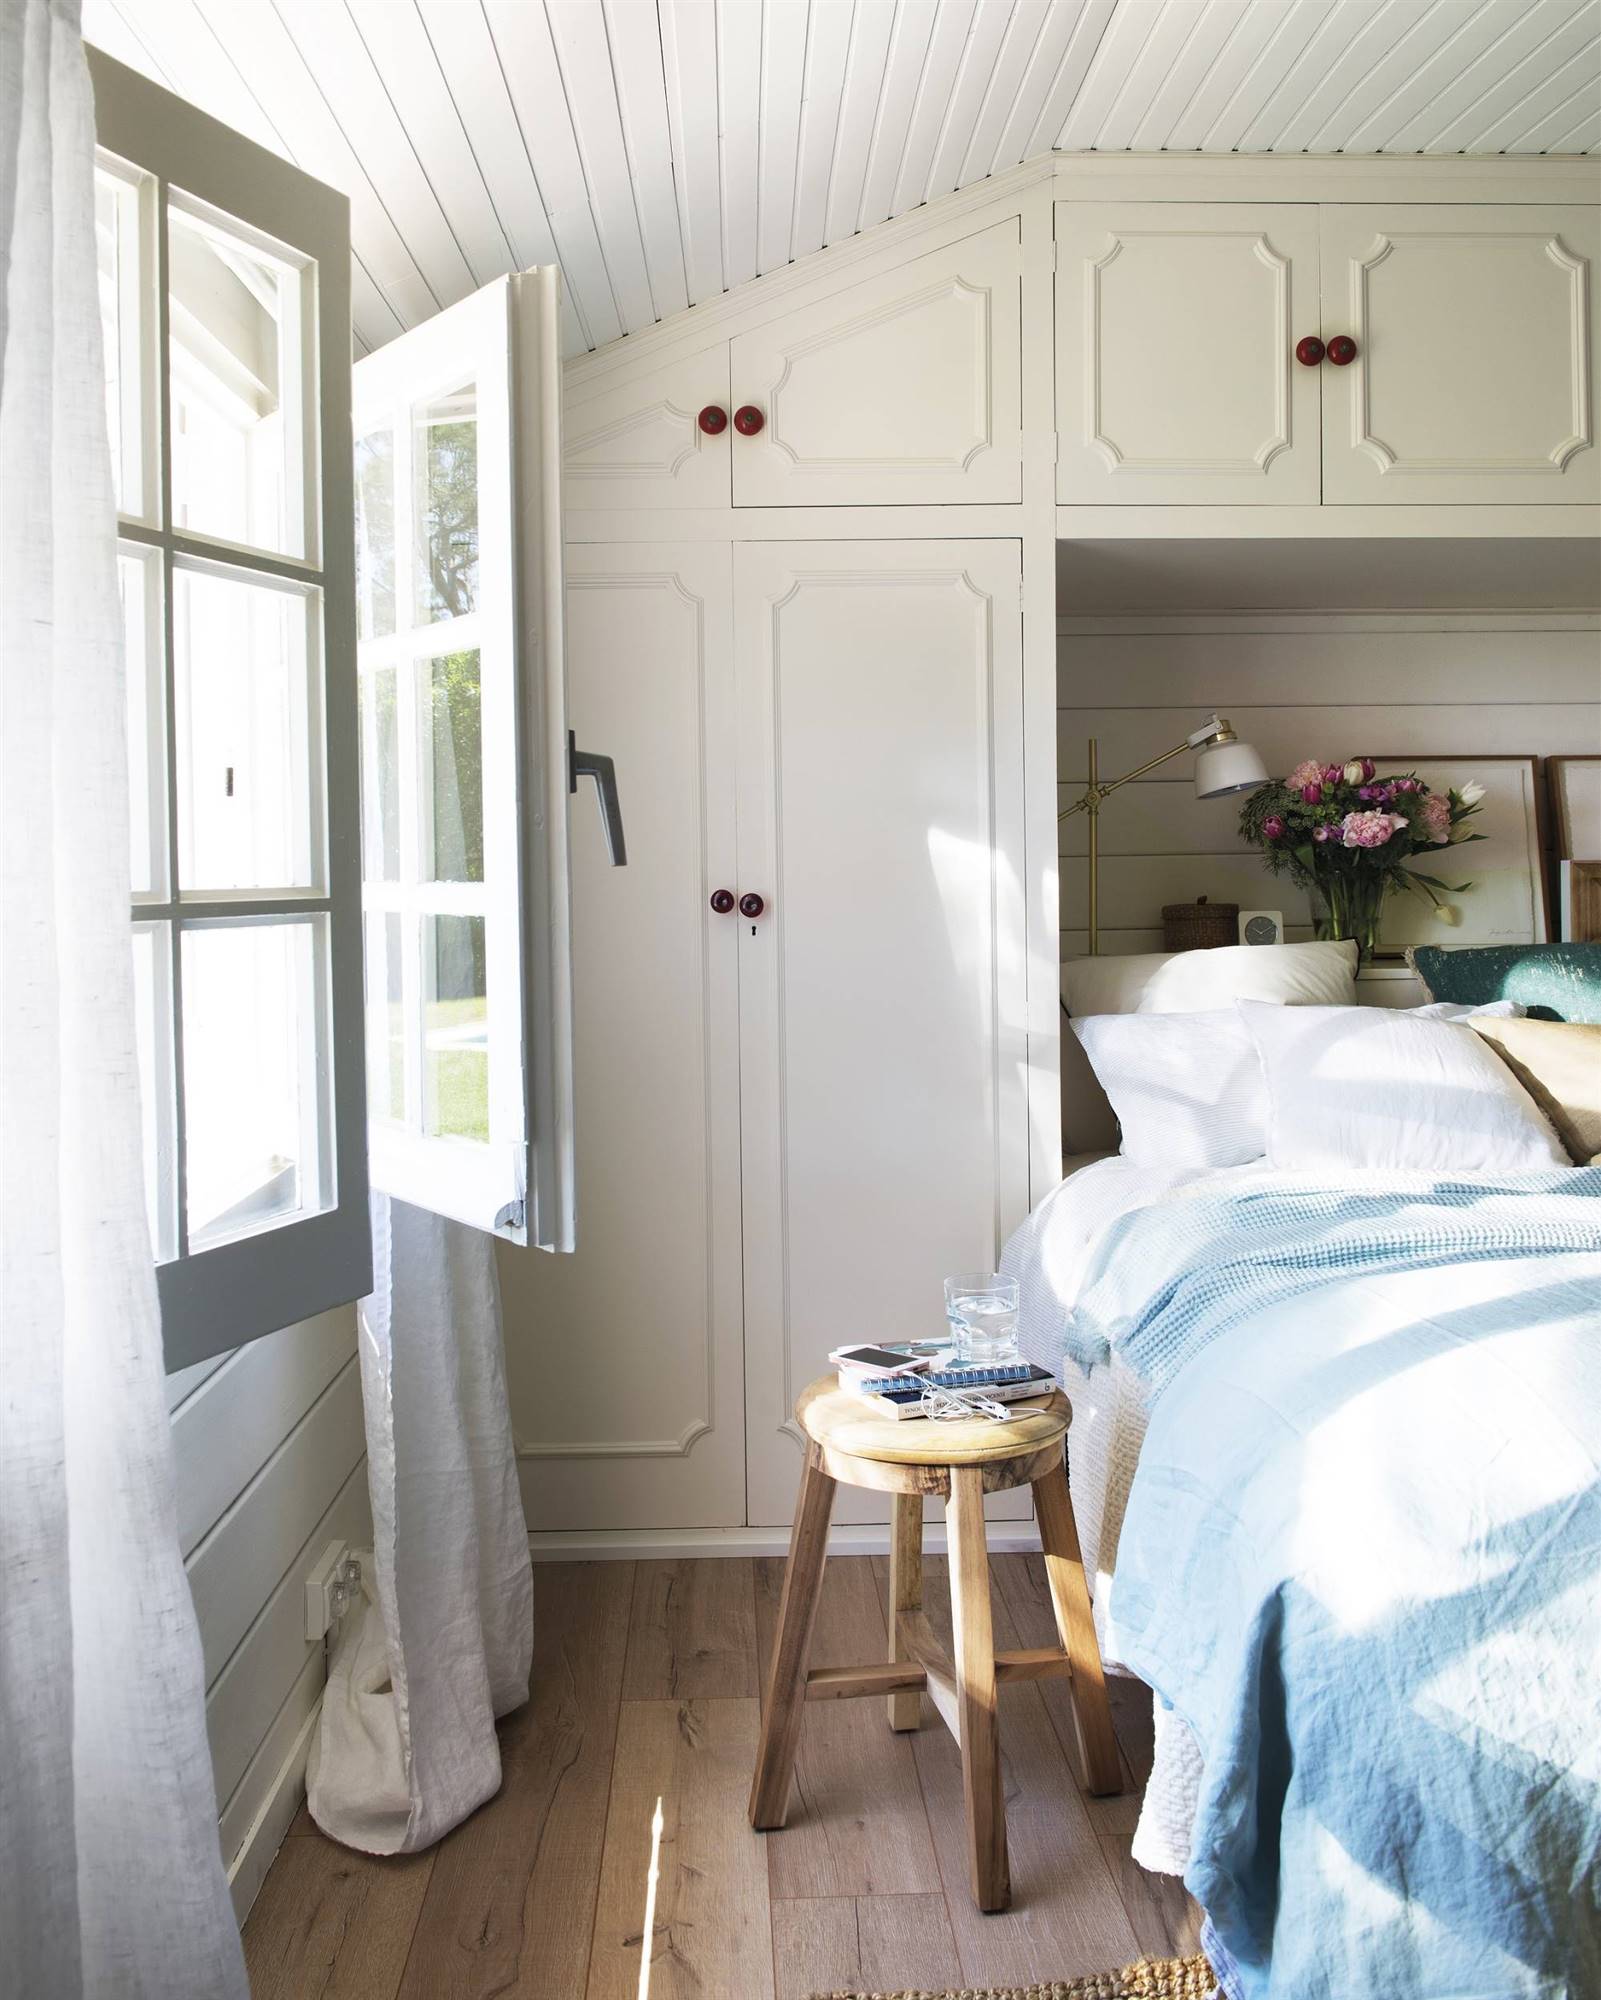 Dormitorio con armario a medida de color blanco que rodea el cabecero.